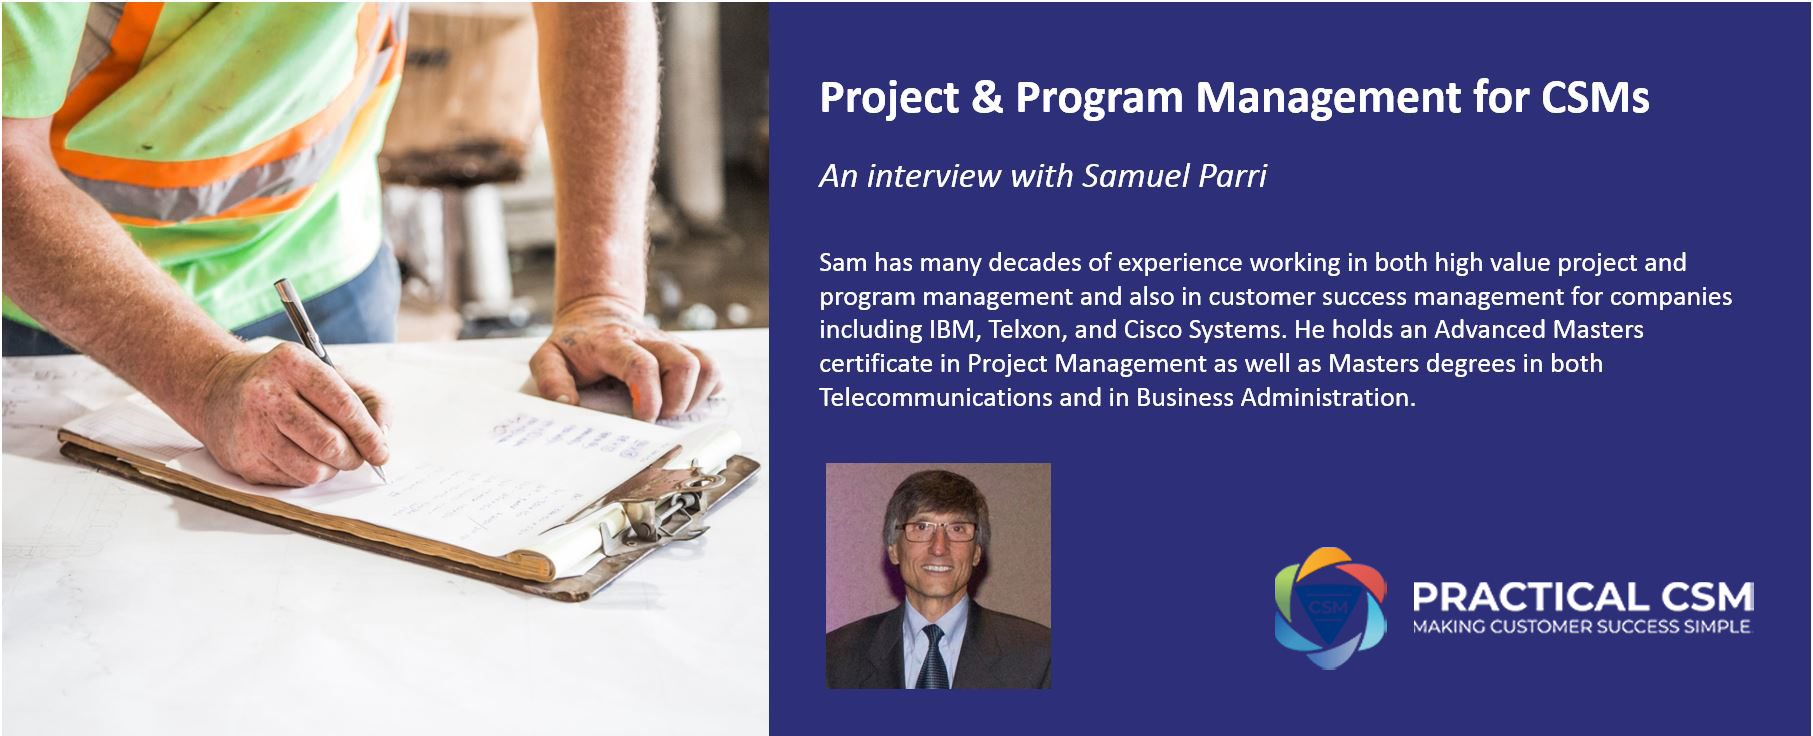 Project & Program Management for CSMs- Practical CSM